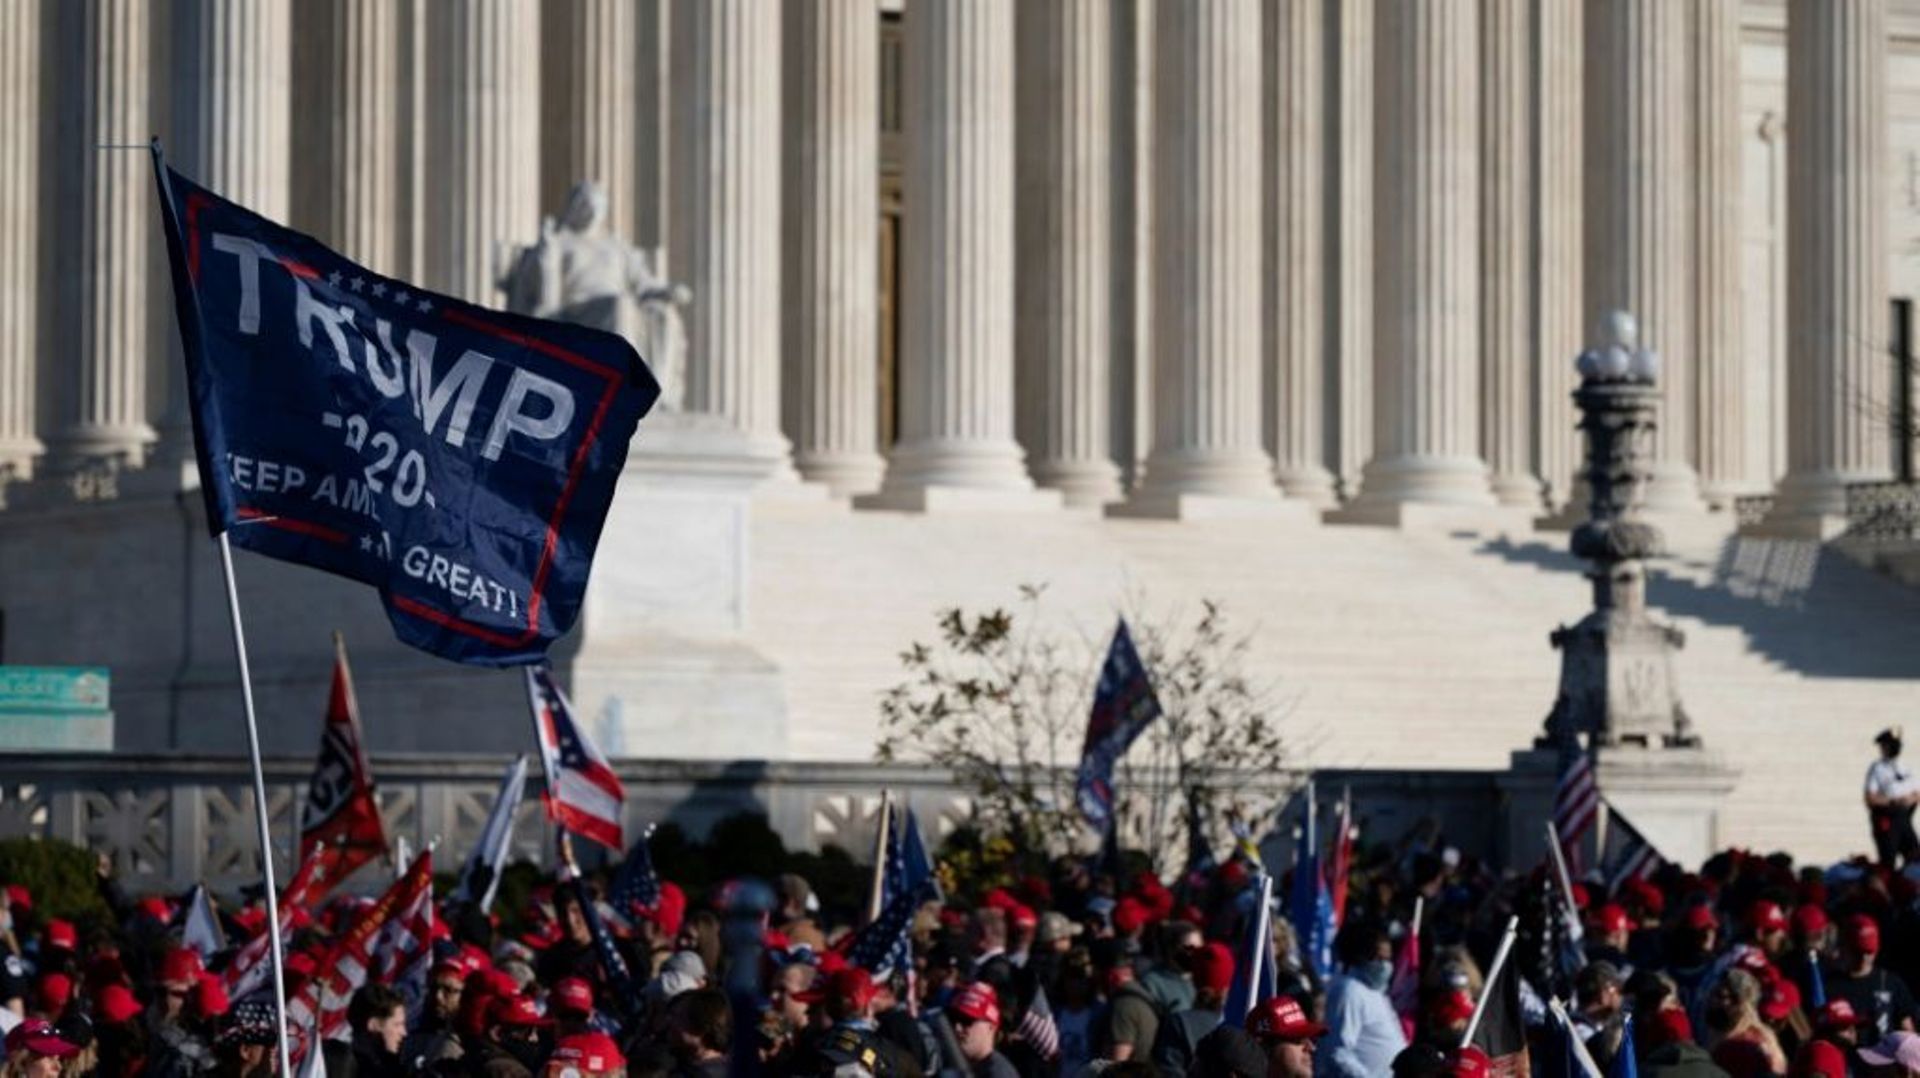 Des supporteurs du président Donald Trump rassemblés devant la Cour suprême, le 14 novembre 2020 à Washington